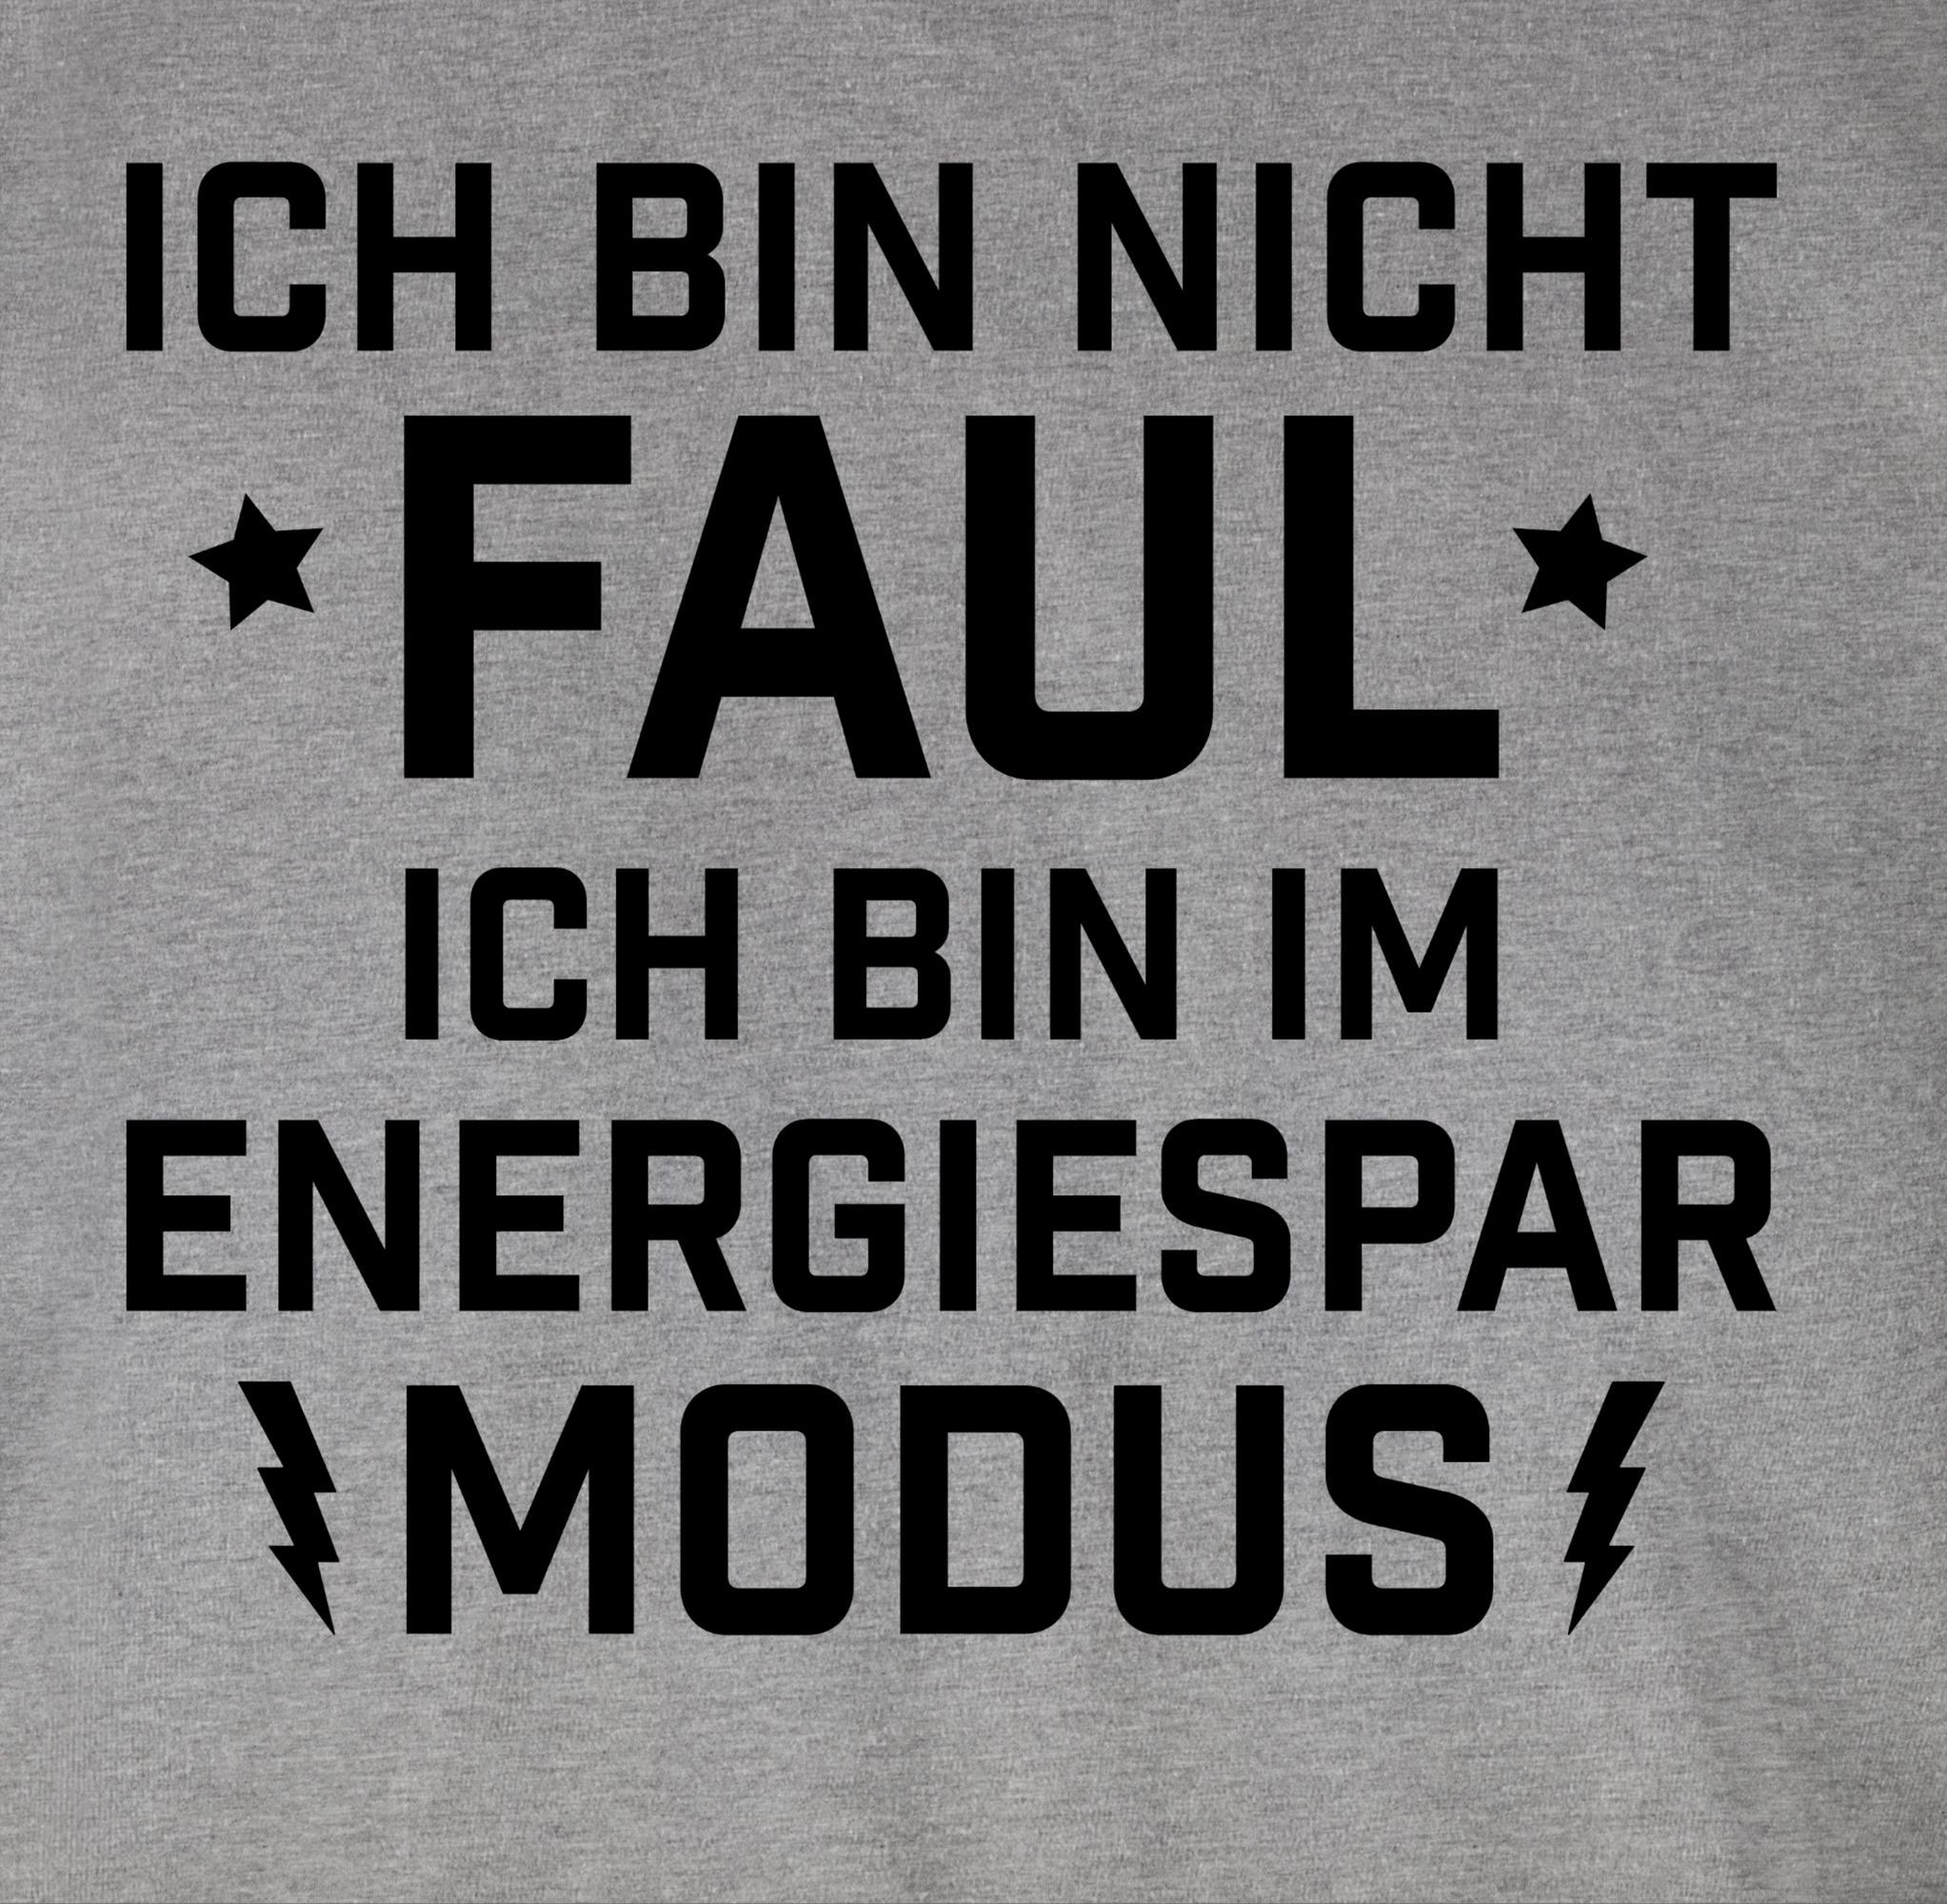 Shirtracer T-Shirt Ich bin Spruch Energiesparmodus mit 02 meliert Grau Sprüche - nicht Faul Statement